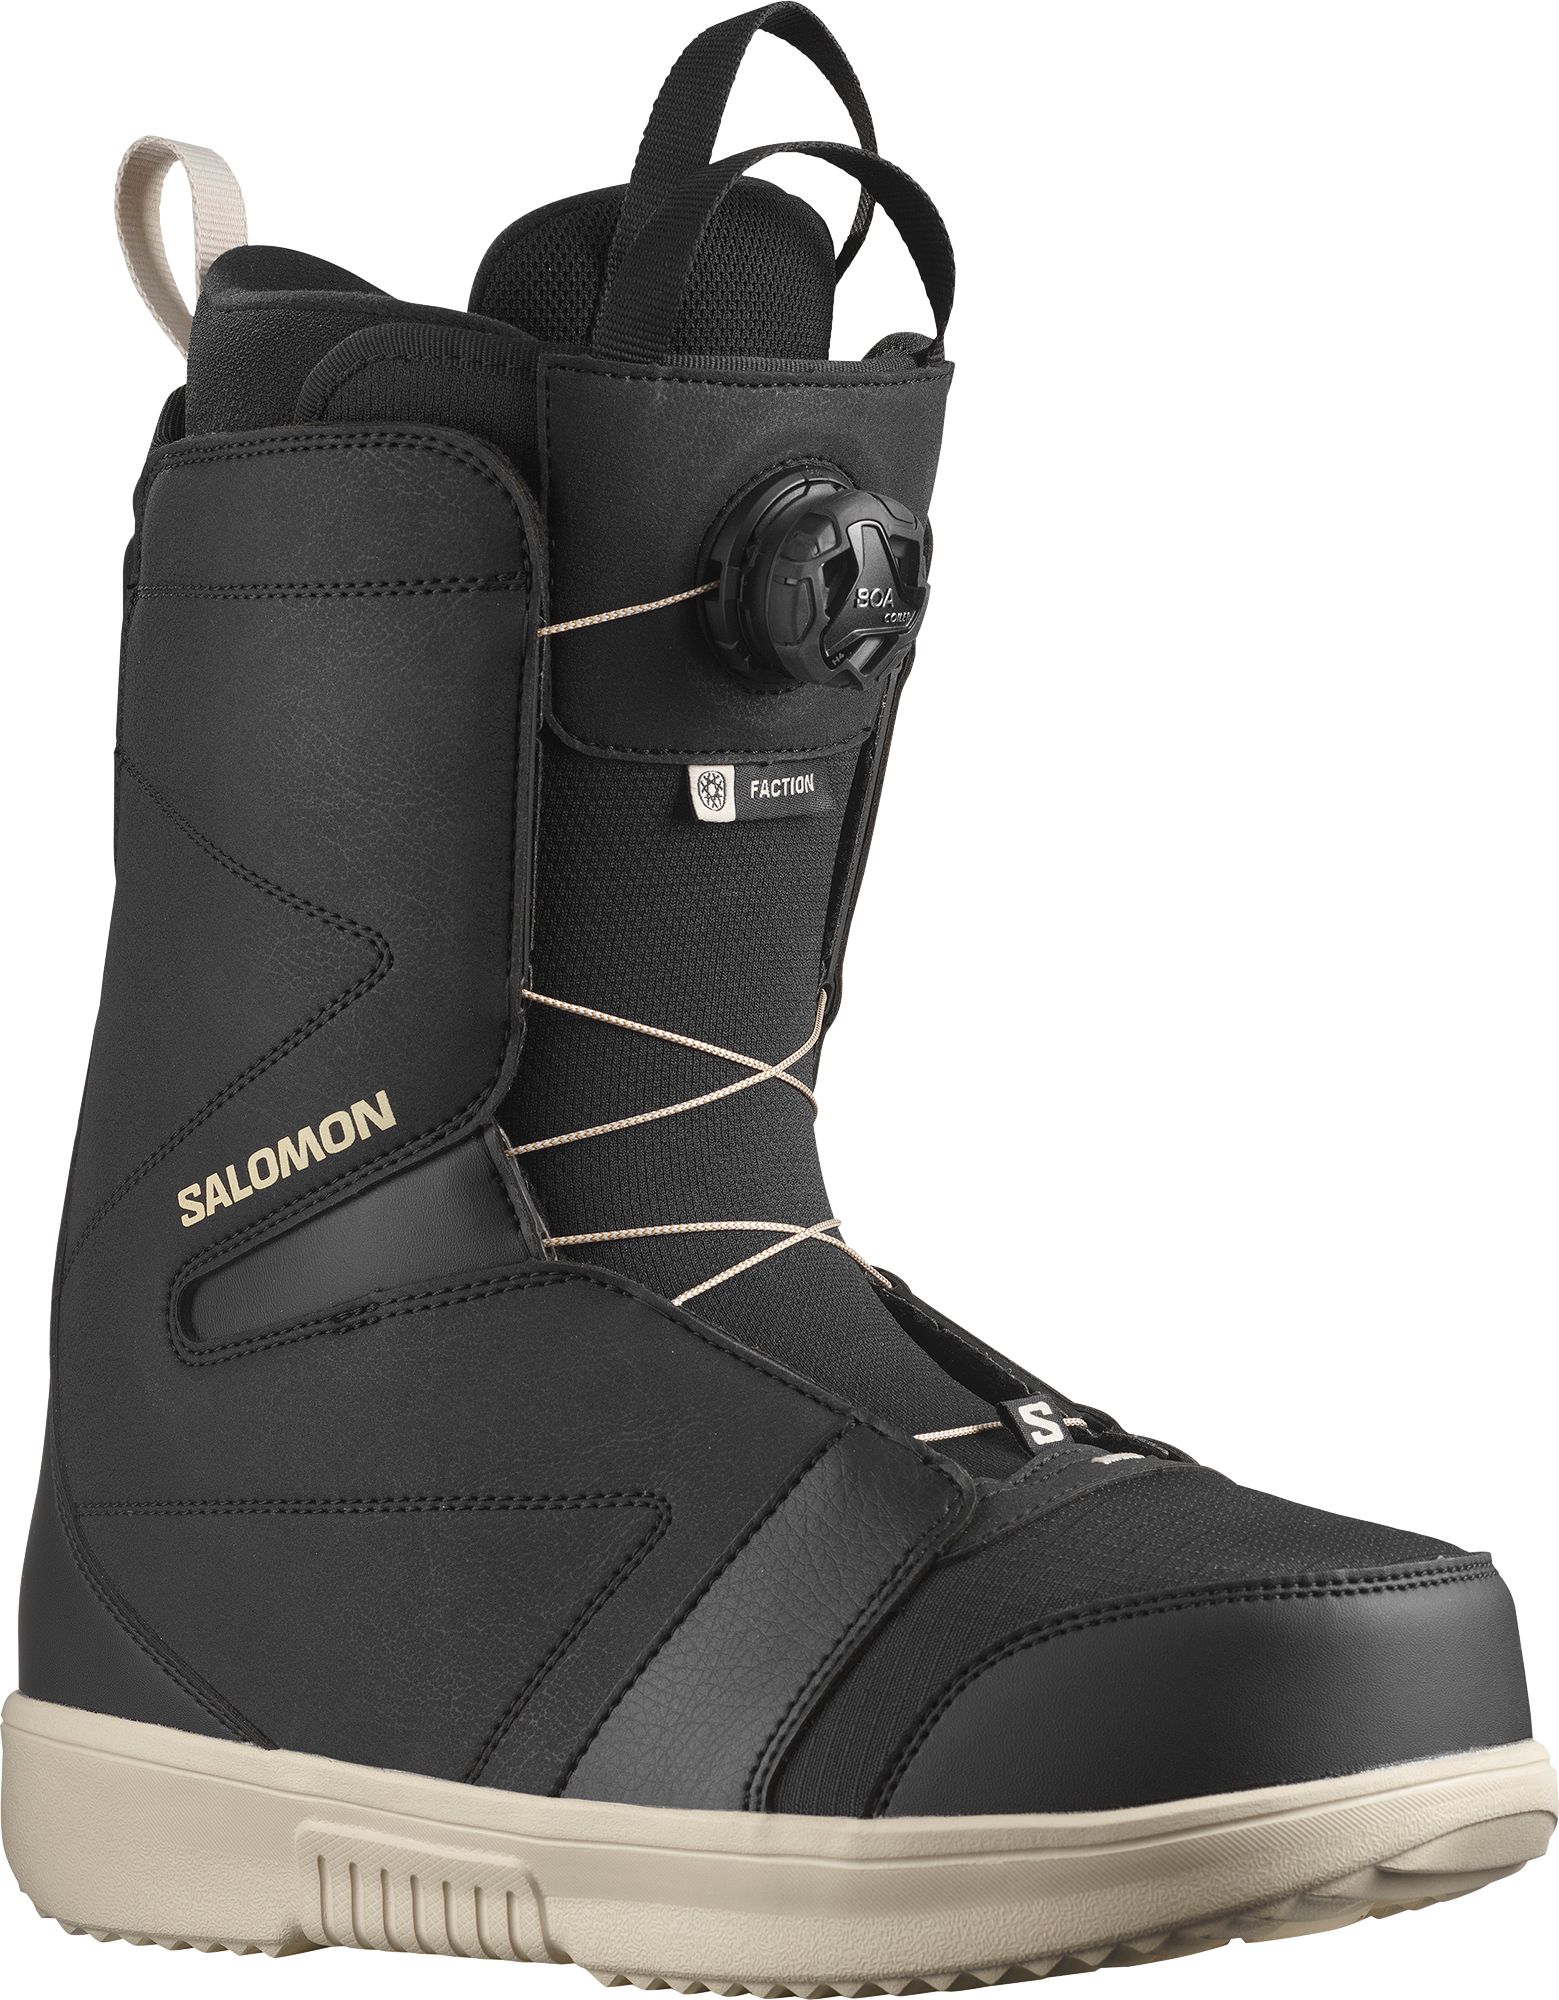 Photos - Snowboard Salomon '23-'24 Faction BOA  Boots, Men's, Size 11.5, Black/Black 